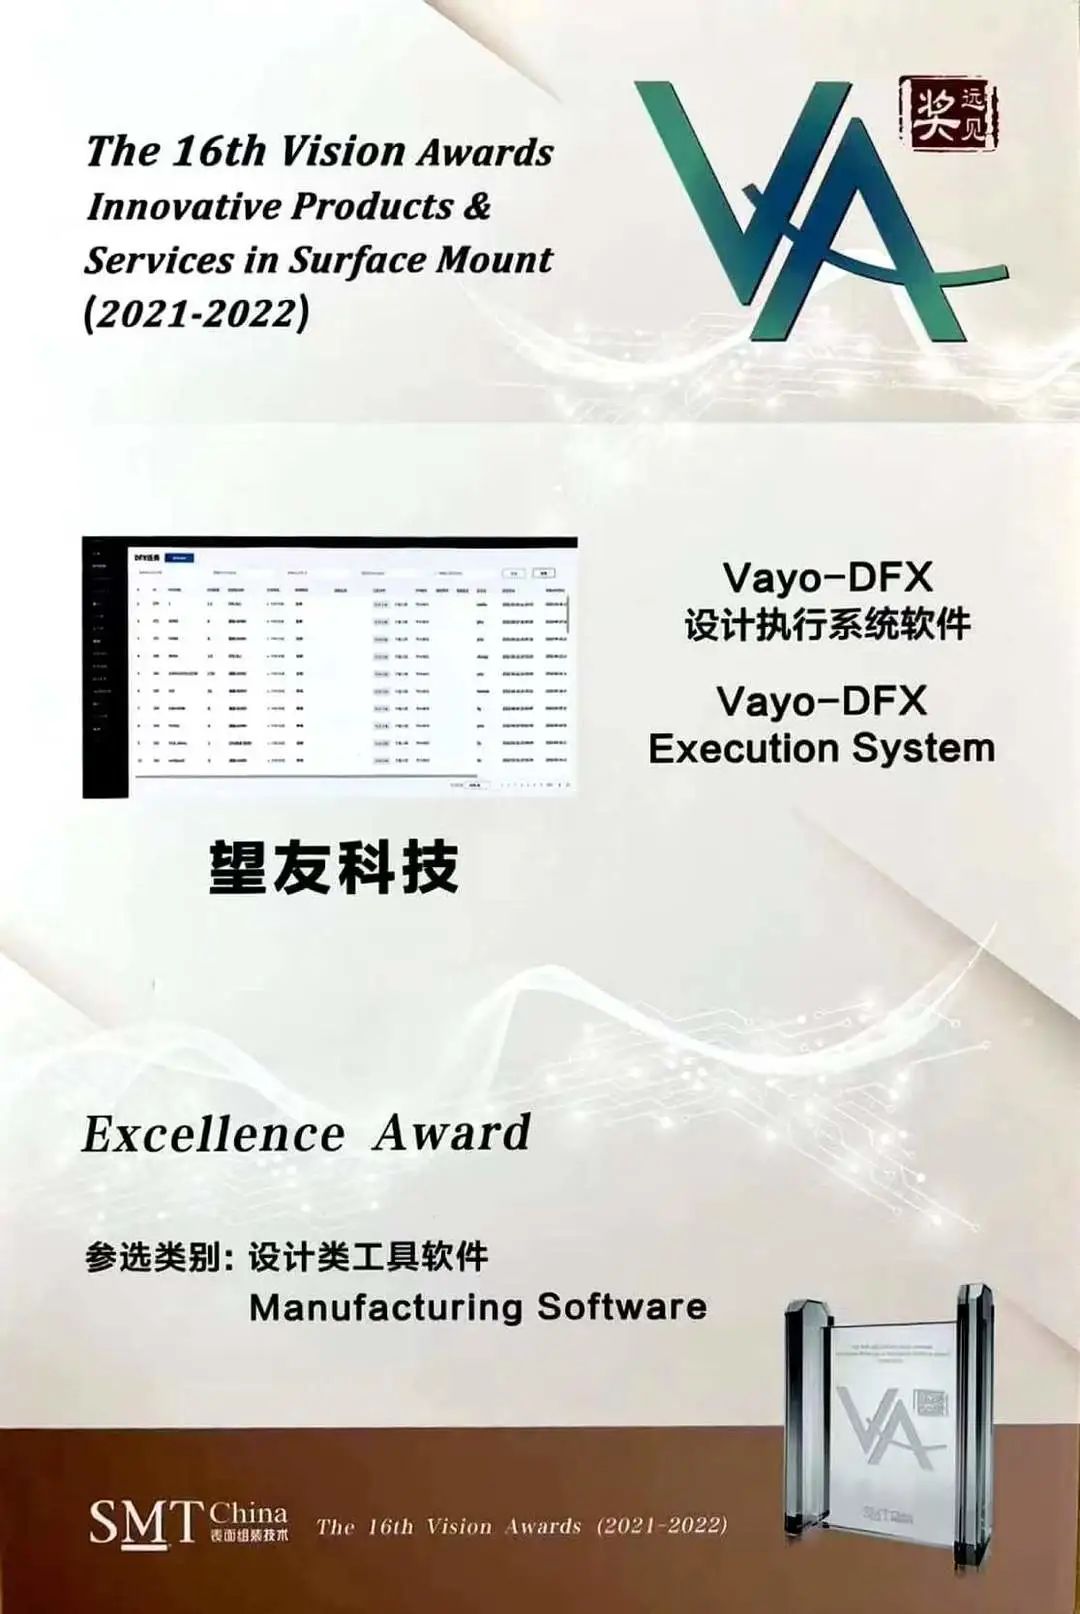 望友DFX设计执行系统荣获第16届“VA”优秀奖